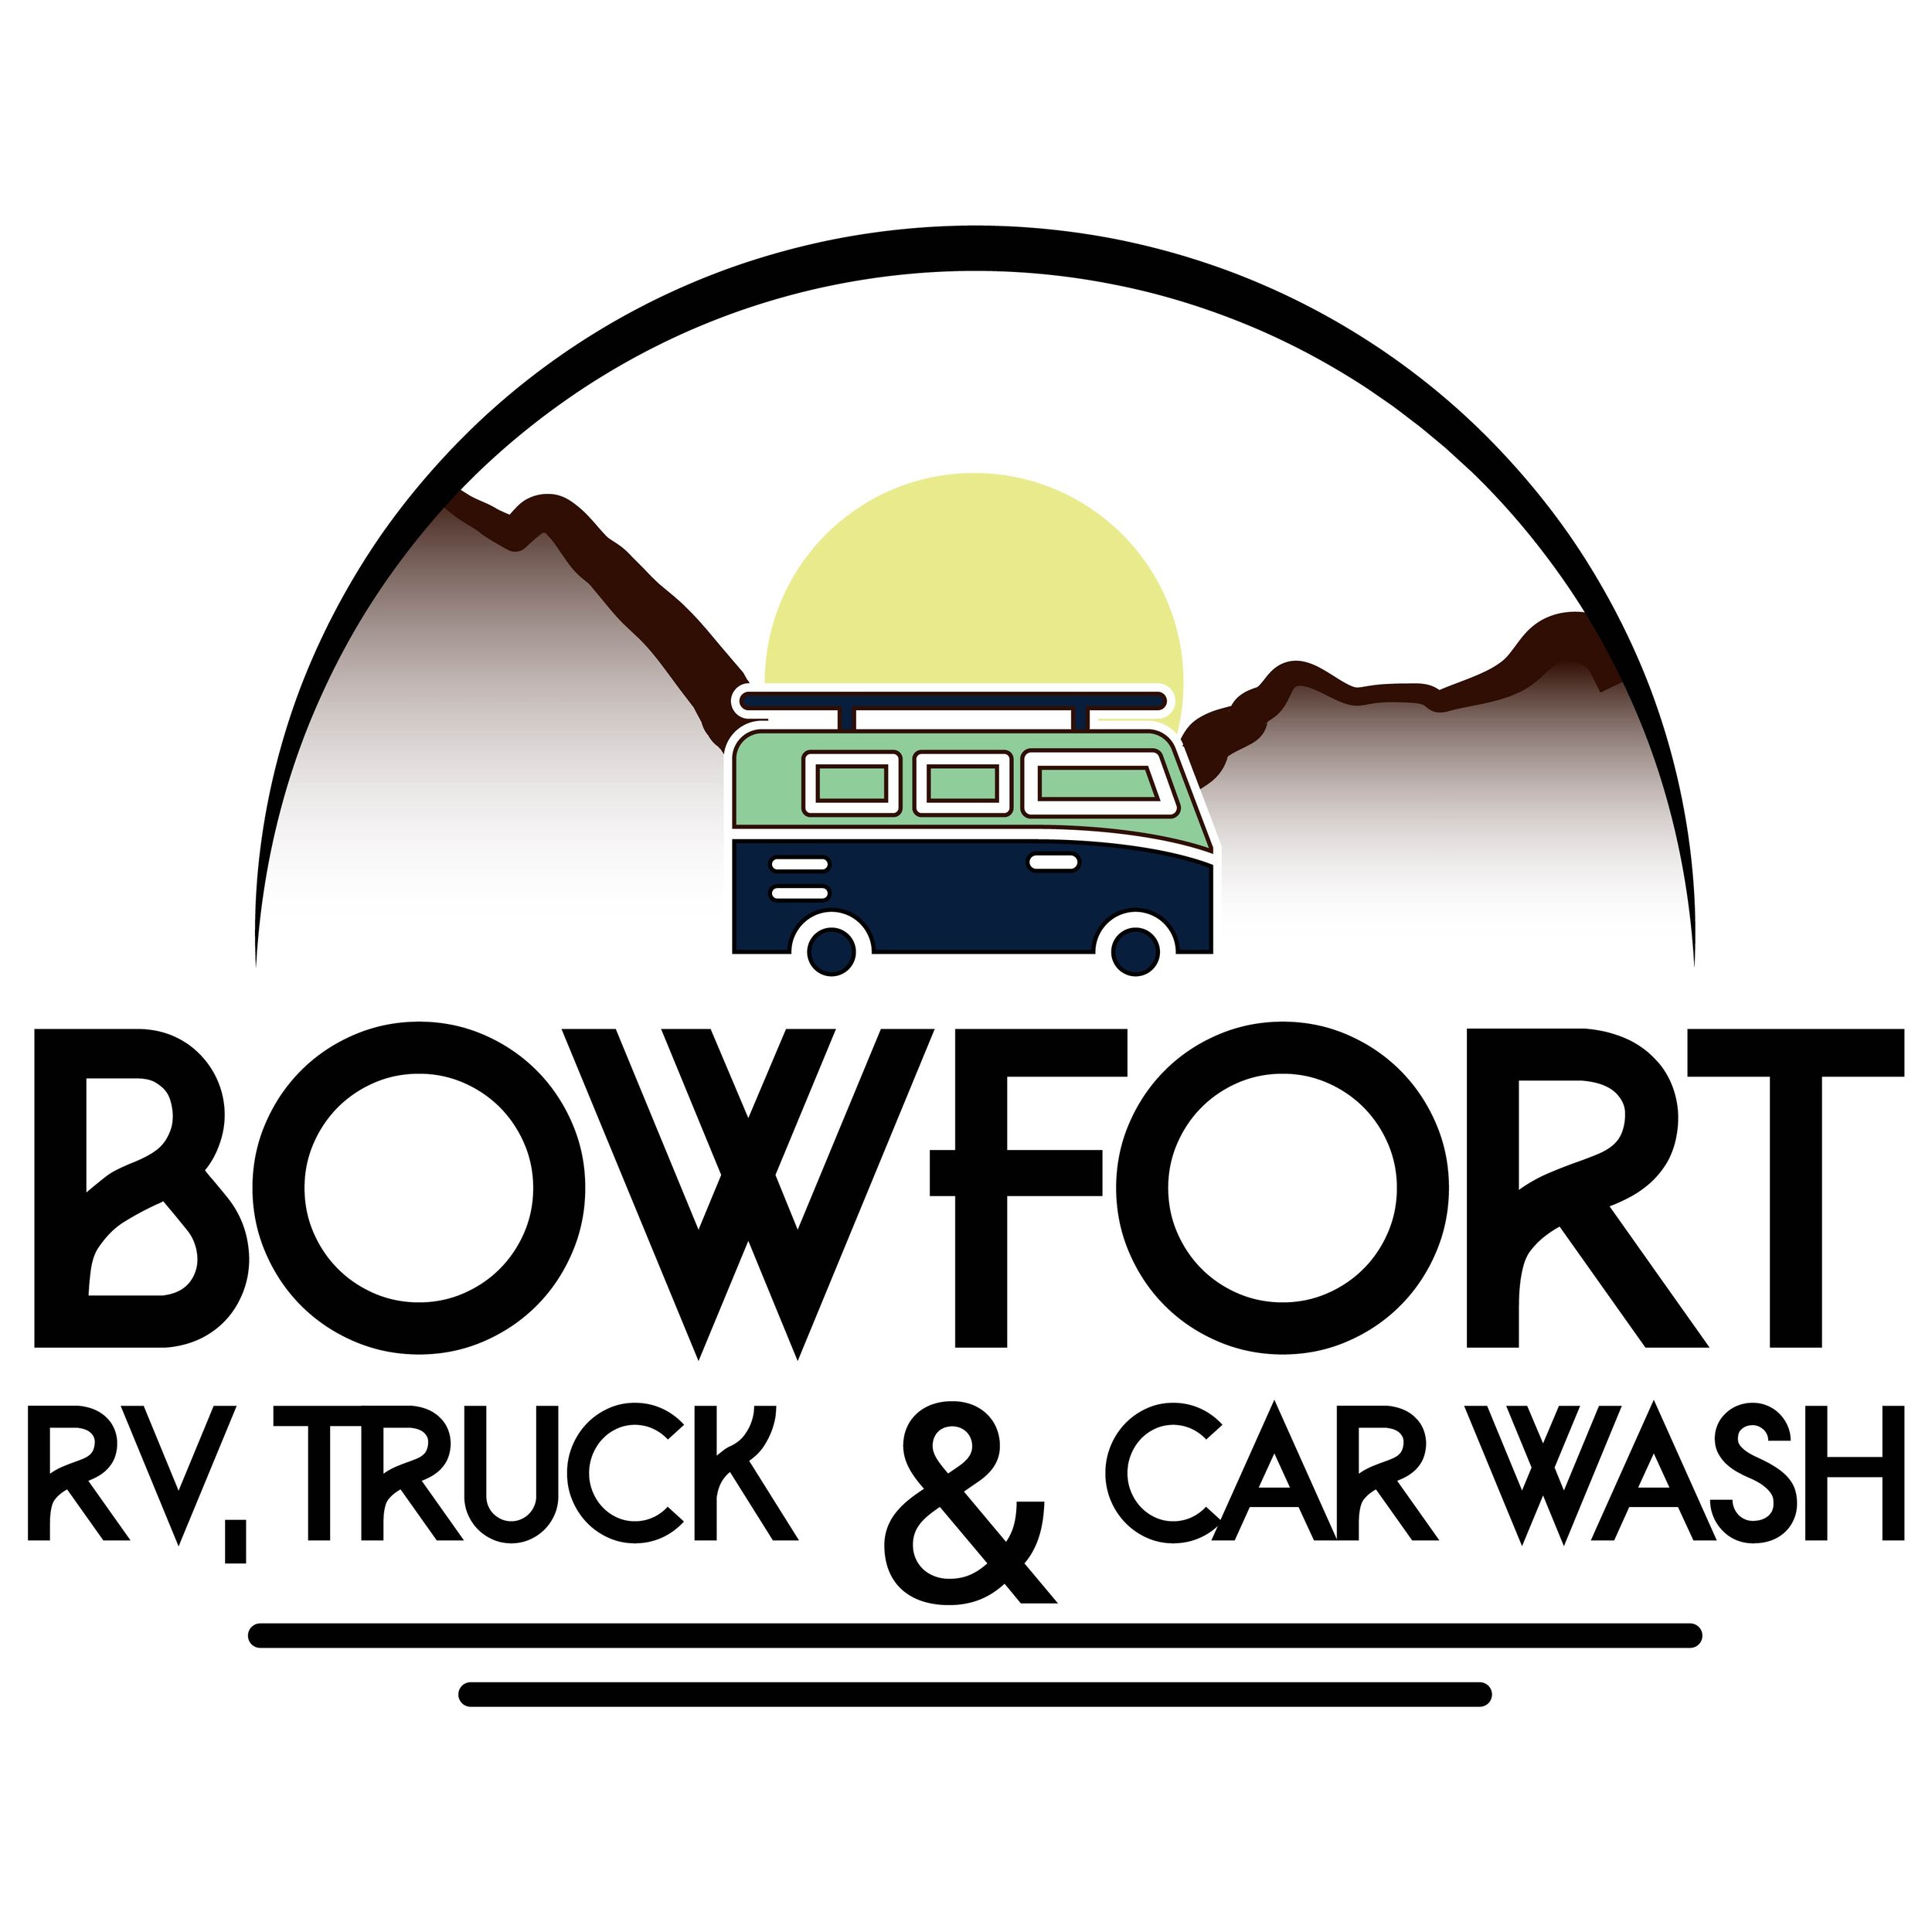 Bowfort Road RV, Truck &amp; Car Wash